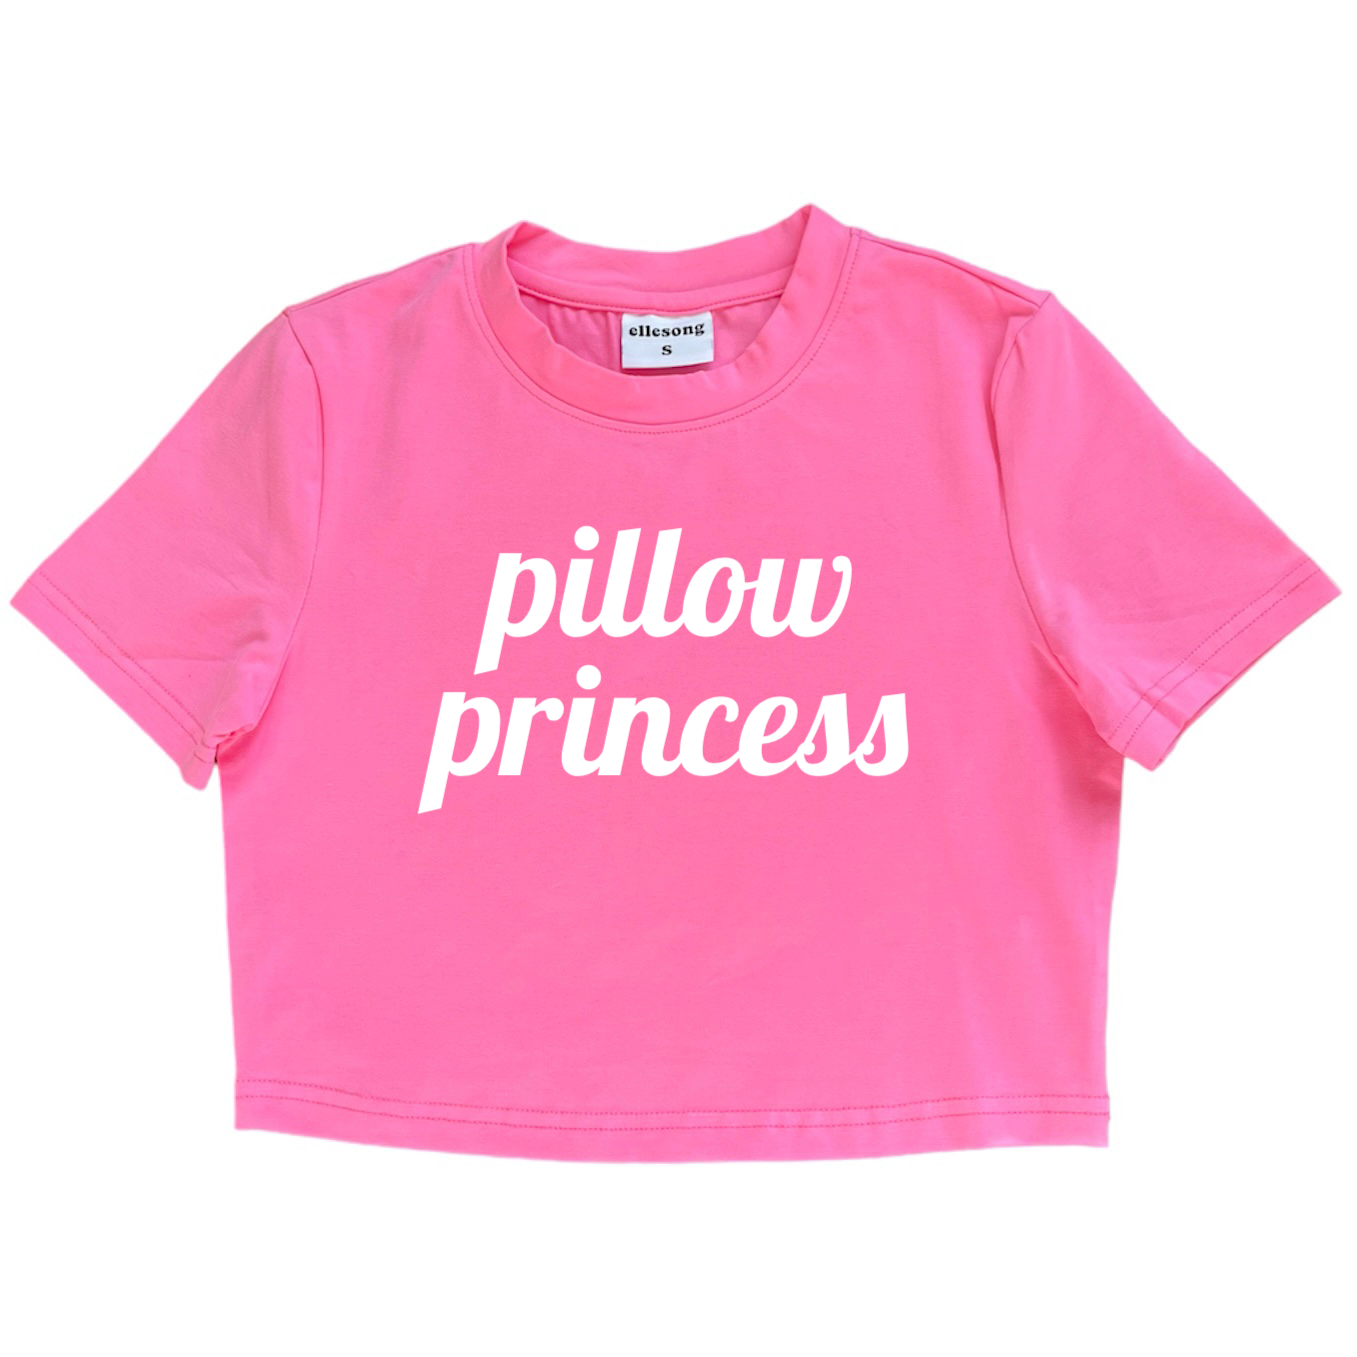 Pillow Princess Baby Tee